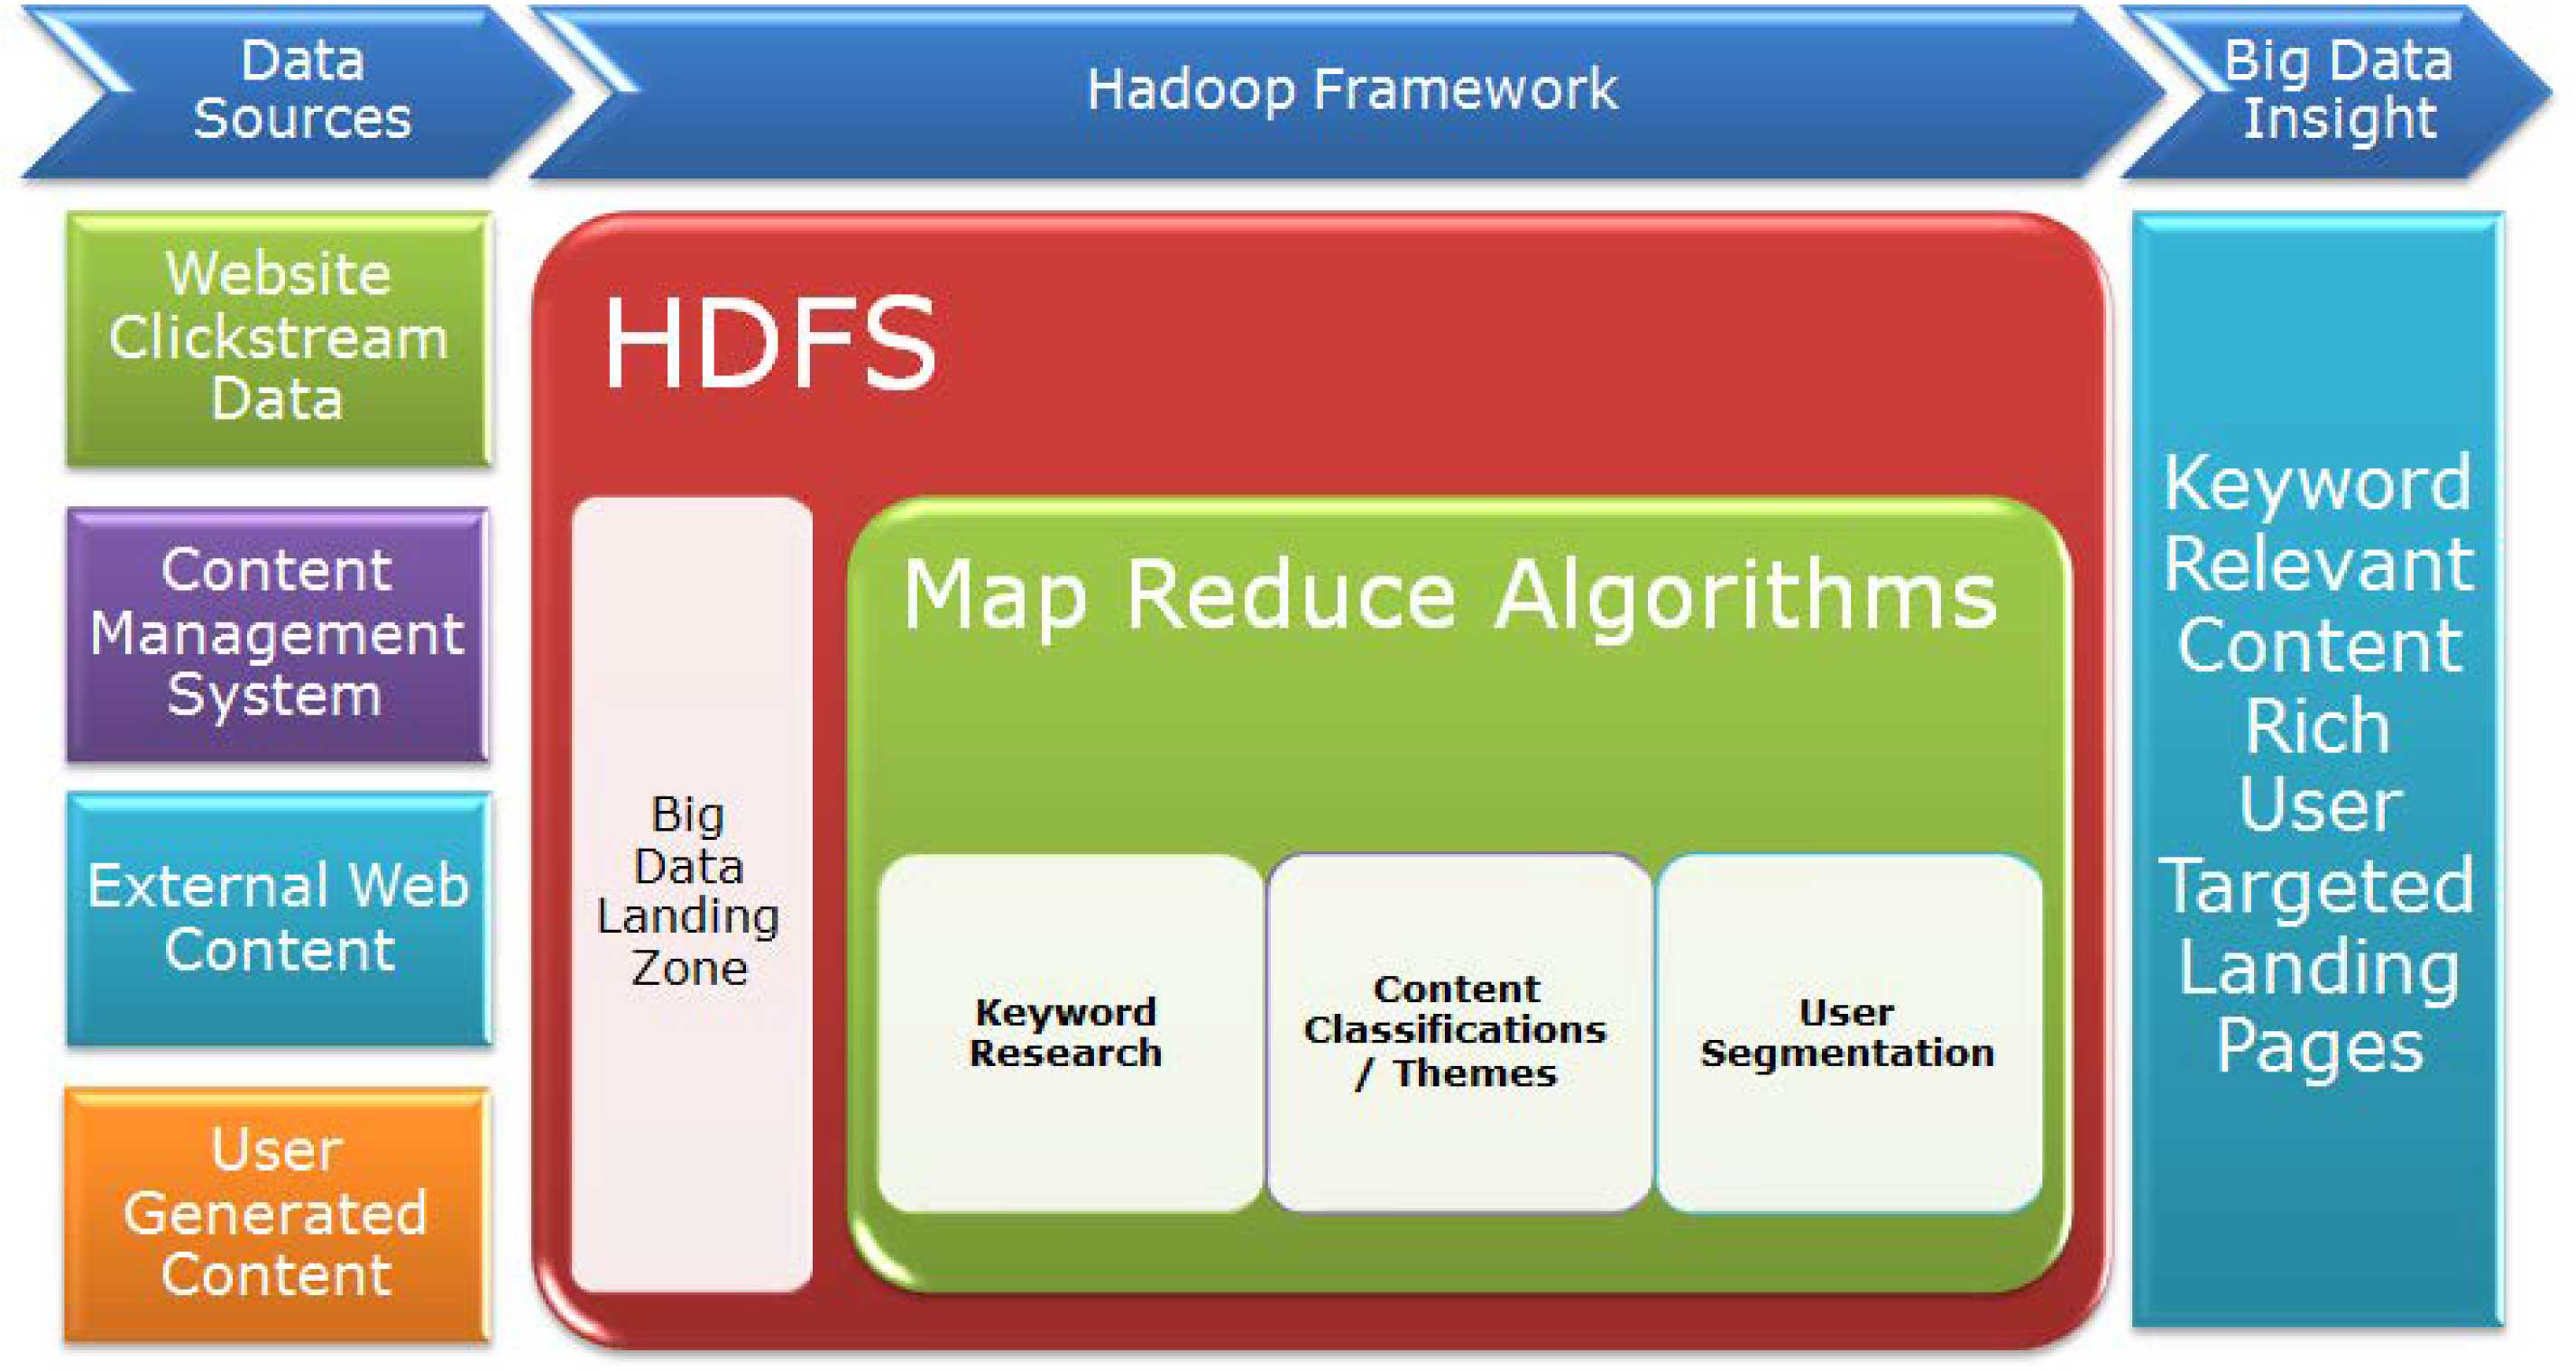 Hadoop Framework